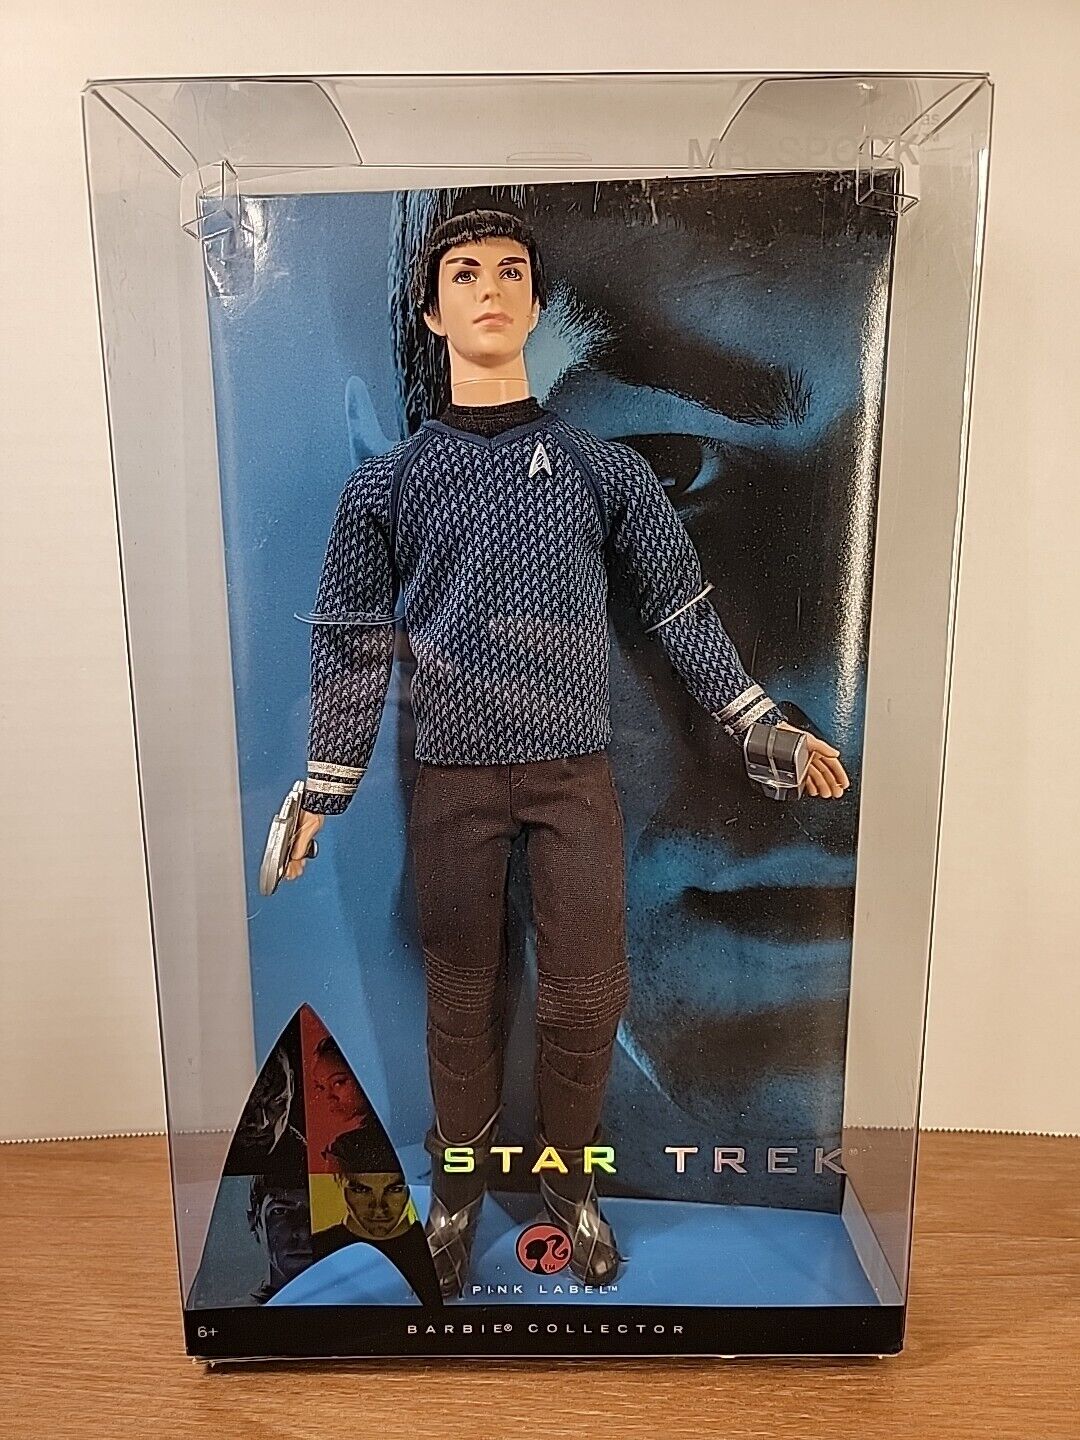 Mr. Spock Star Trek Pink Label Barbie Collector Ken Doll 2008 Mattel. New